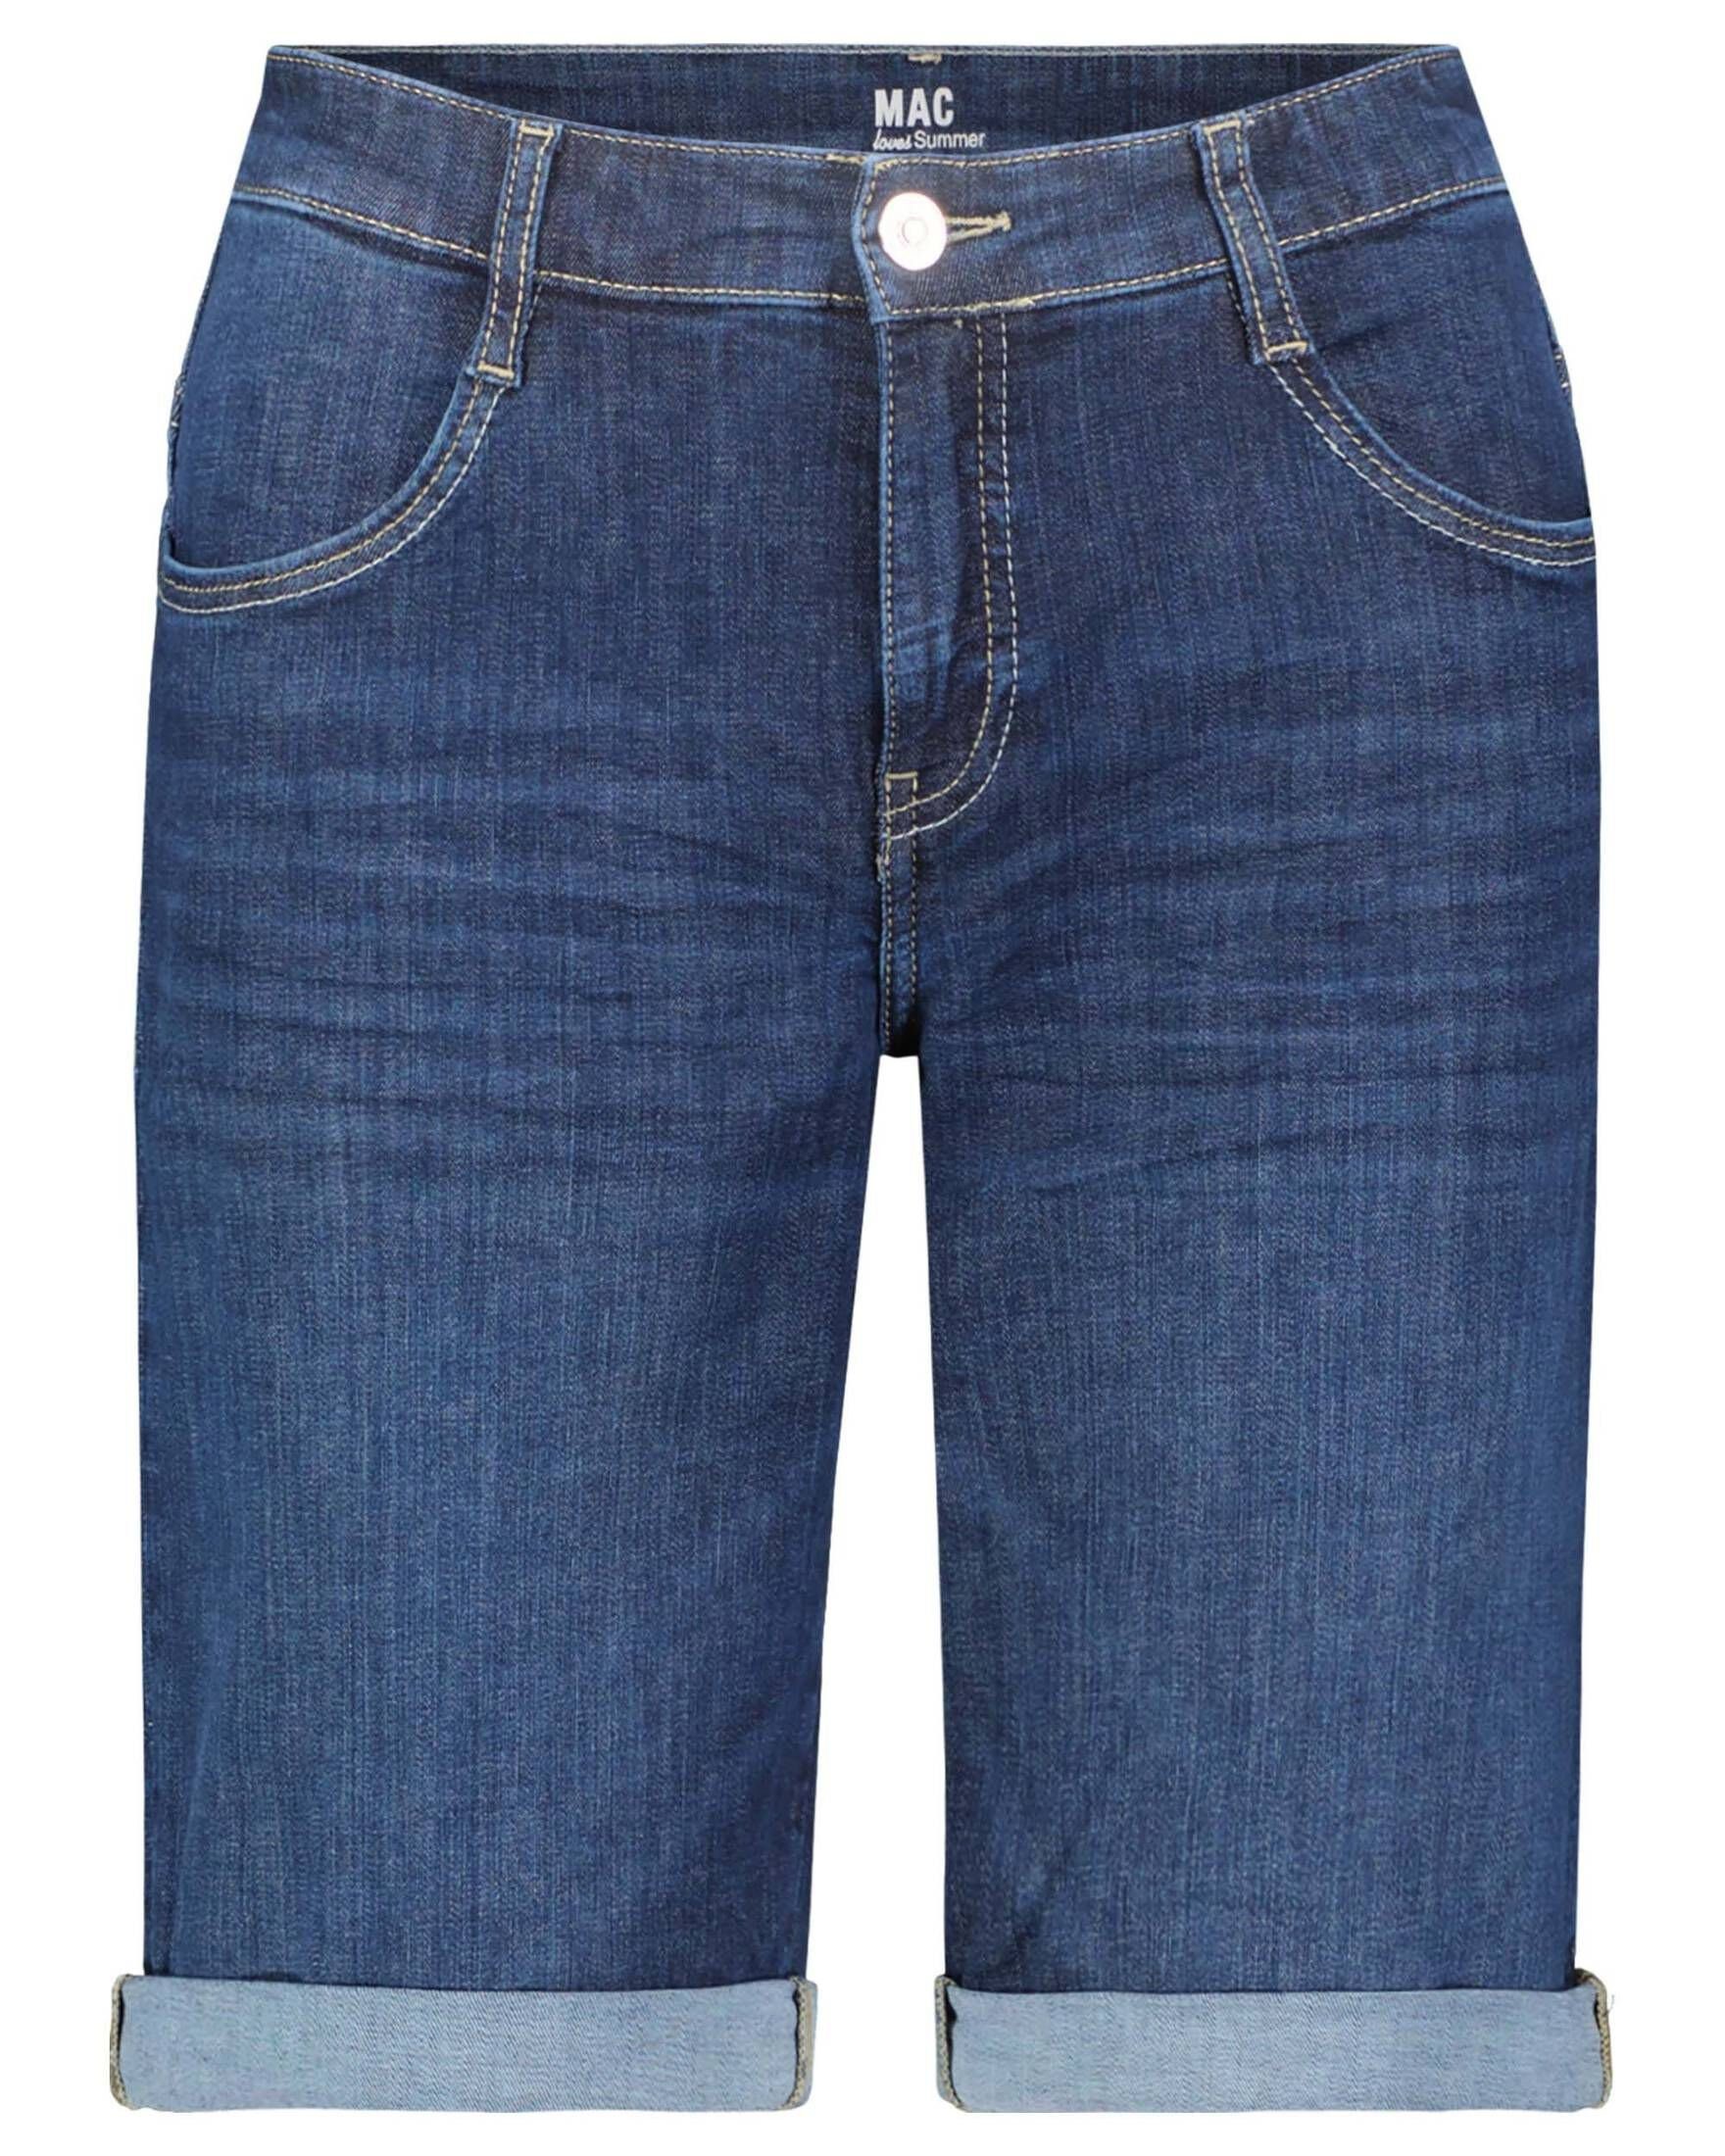 [Inländisches reguläres Produkt] MAC 5-Pocket-Jeans Damen Jeansshorts SHORTY darkblue (1-tlg) (83)